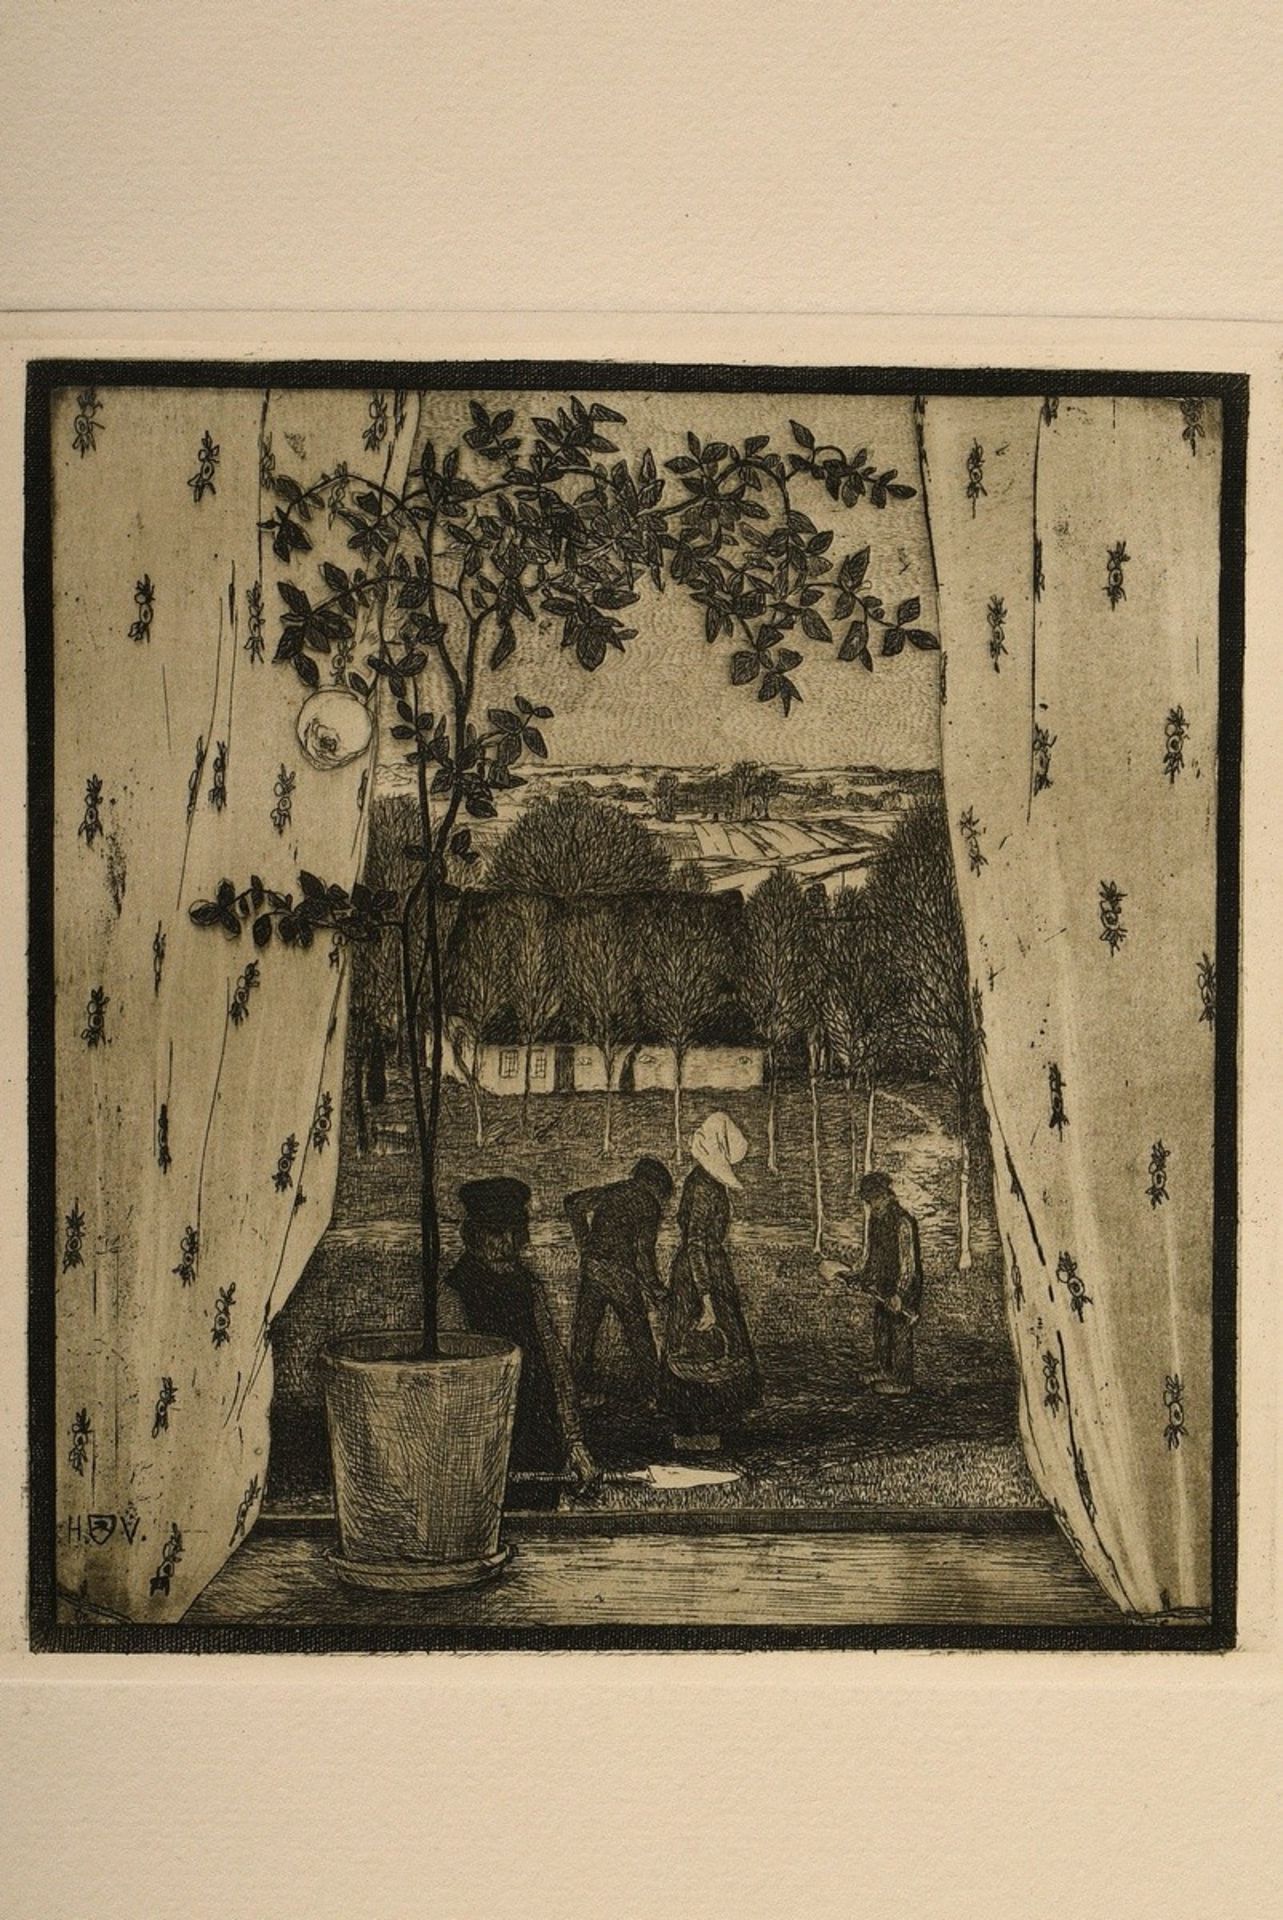 Vogeler, Heinrich (1872-1942) "An den Frühling" 1899/1901, portfolio with 10 etchings and prelimina - Image 19 of 25